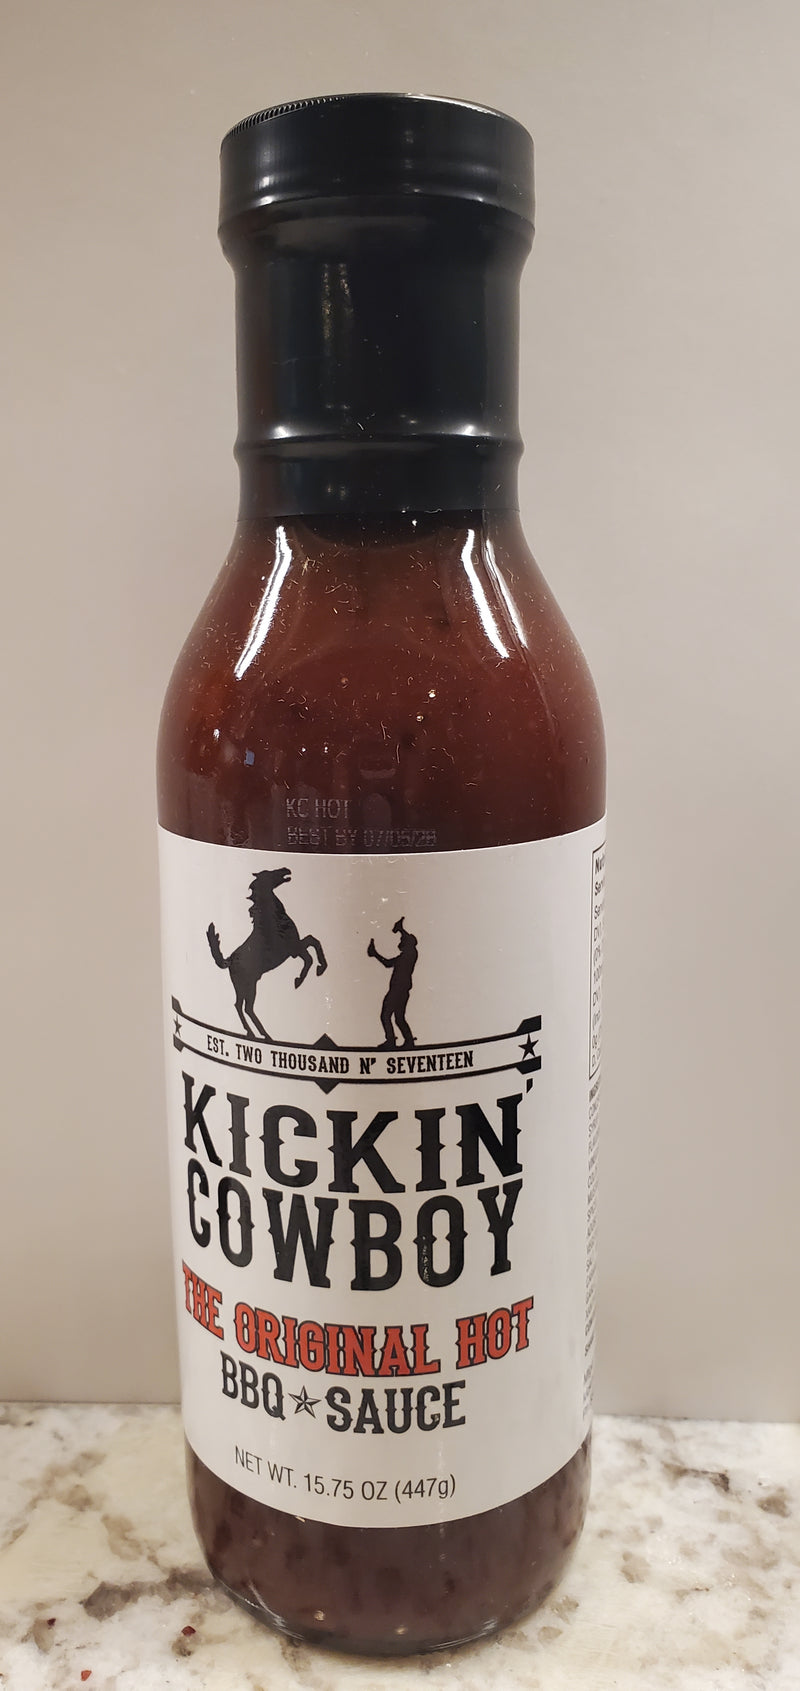 Kickin' Cowboy The Original Hot BBQ Sauce